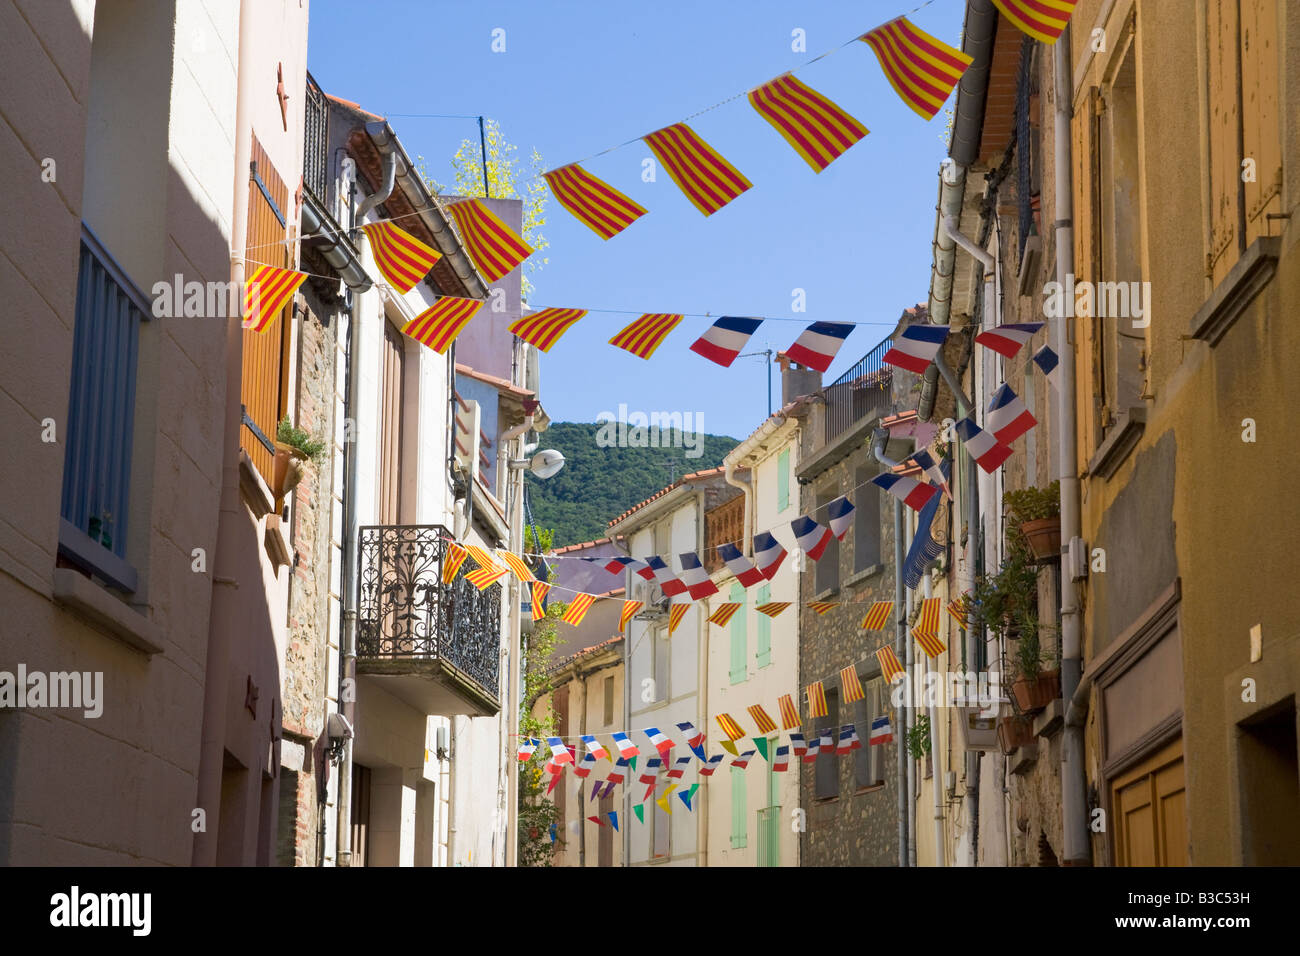 Eine Straße ist für den französischen Nationalfeiertag mit Fahnen und Luftschlangen in Katalanisch und Französisch Farben geschmückt. Stockfoto